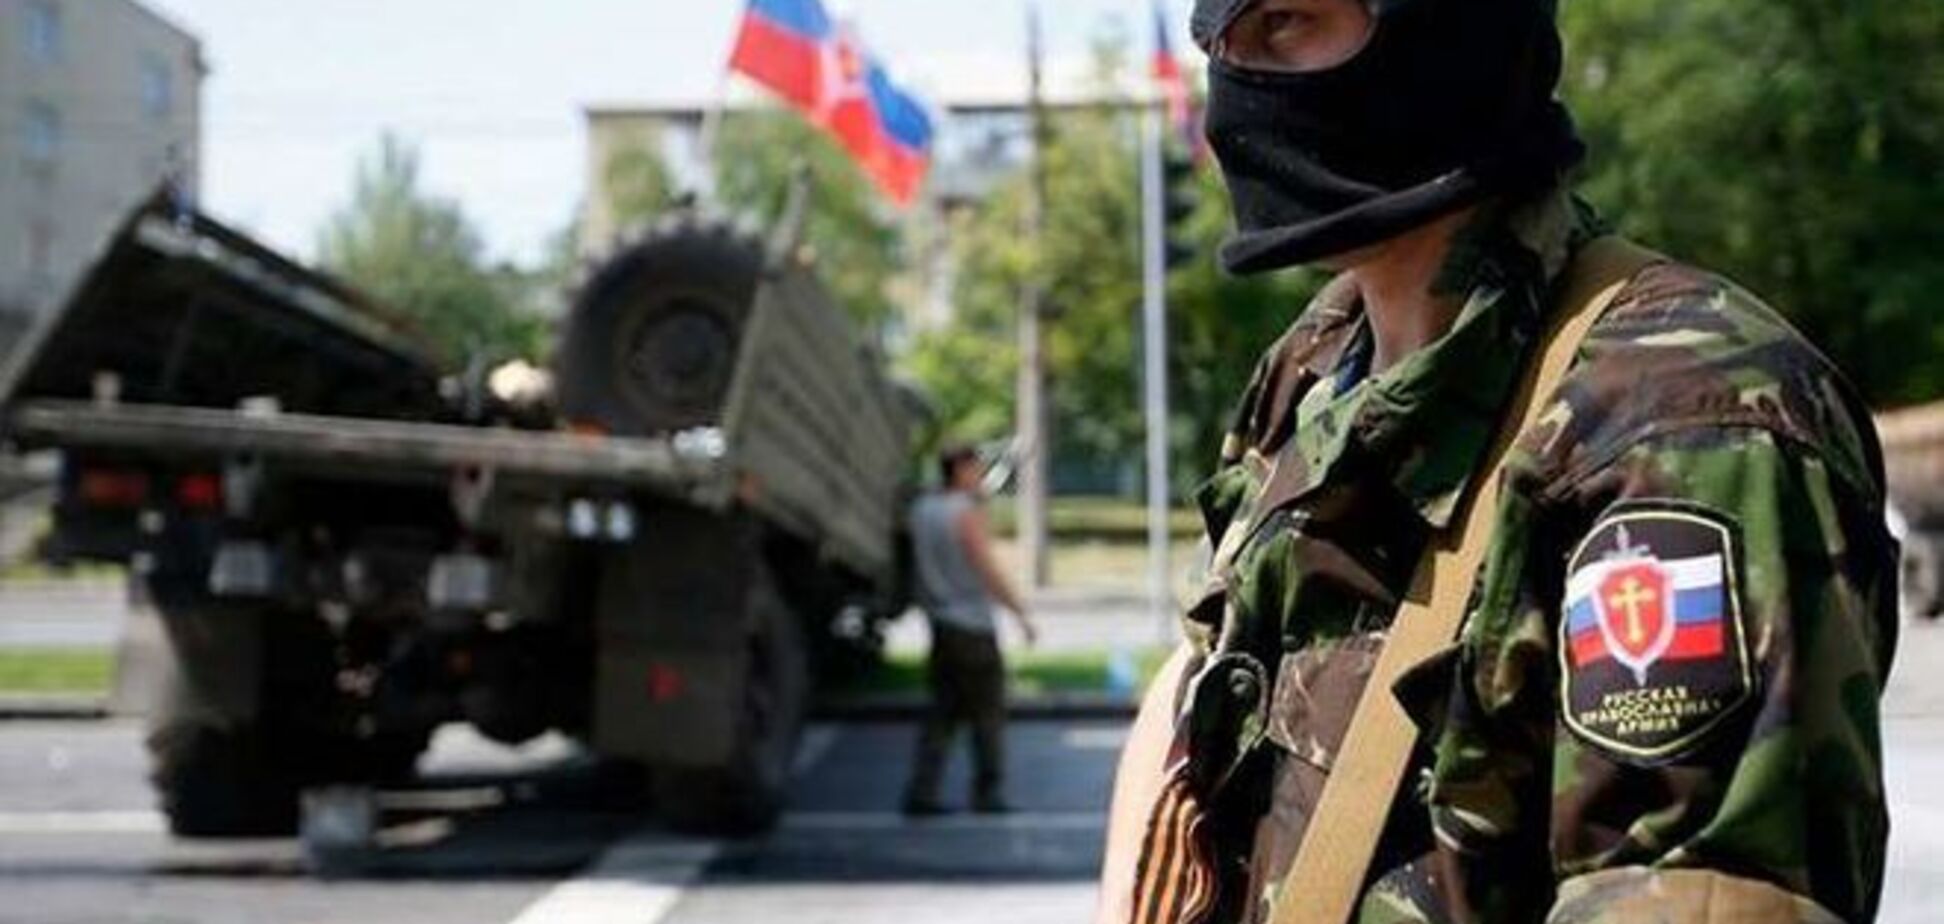 Террористы на Донбассе пытаются создать радиоактивное оружие - СМИ